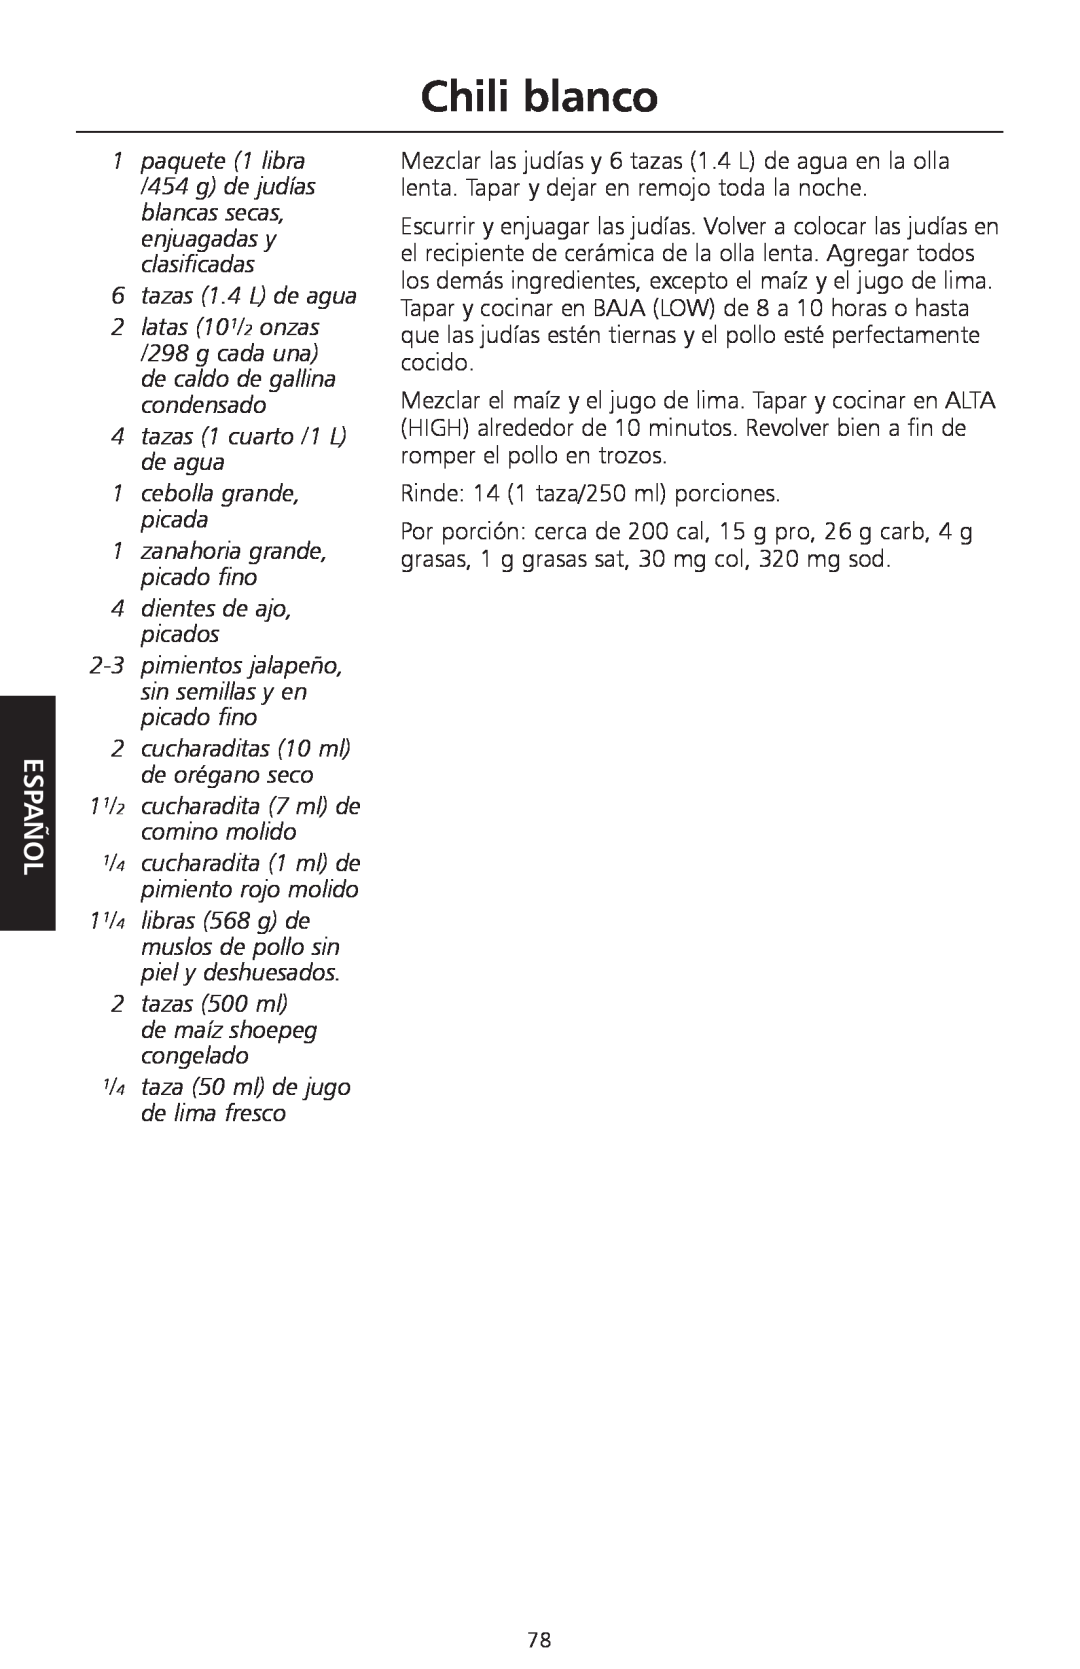 KitchenAid KSC700 manual Chili blanco, tazas 1.4 L de agua, 4tazas 1 cuarto /1 L de agua, 1cebolla grande, picada, Español 